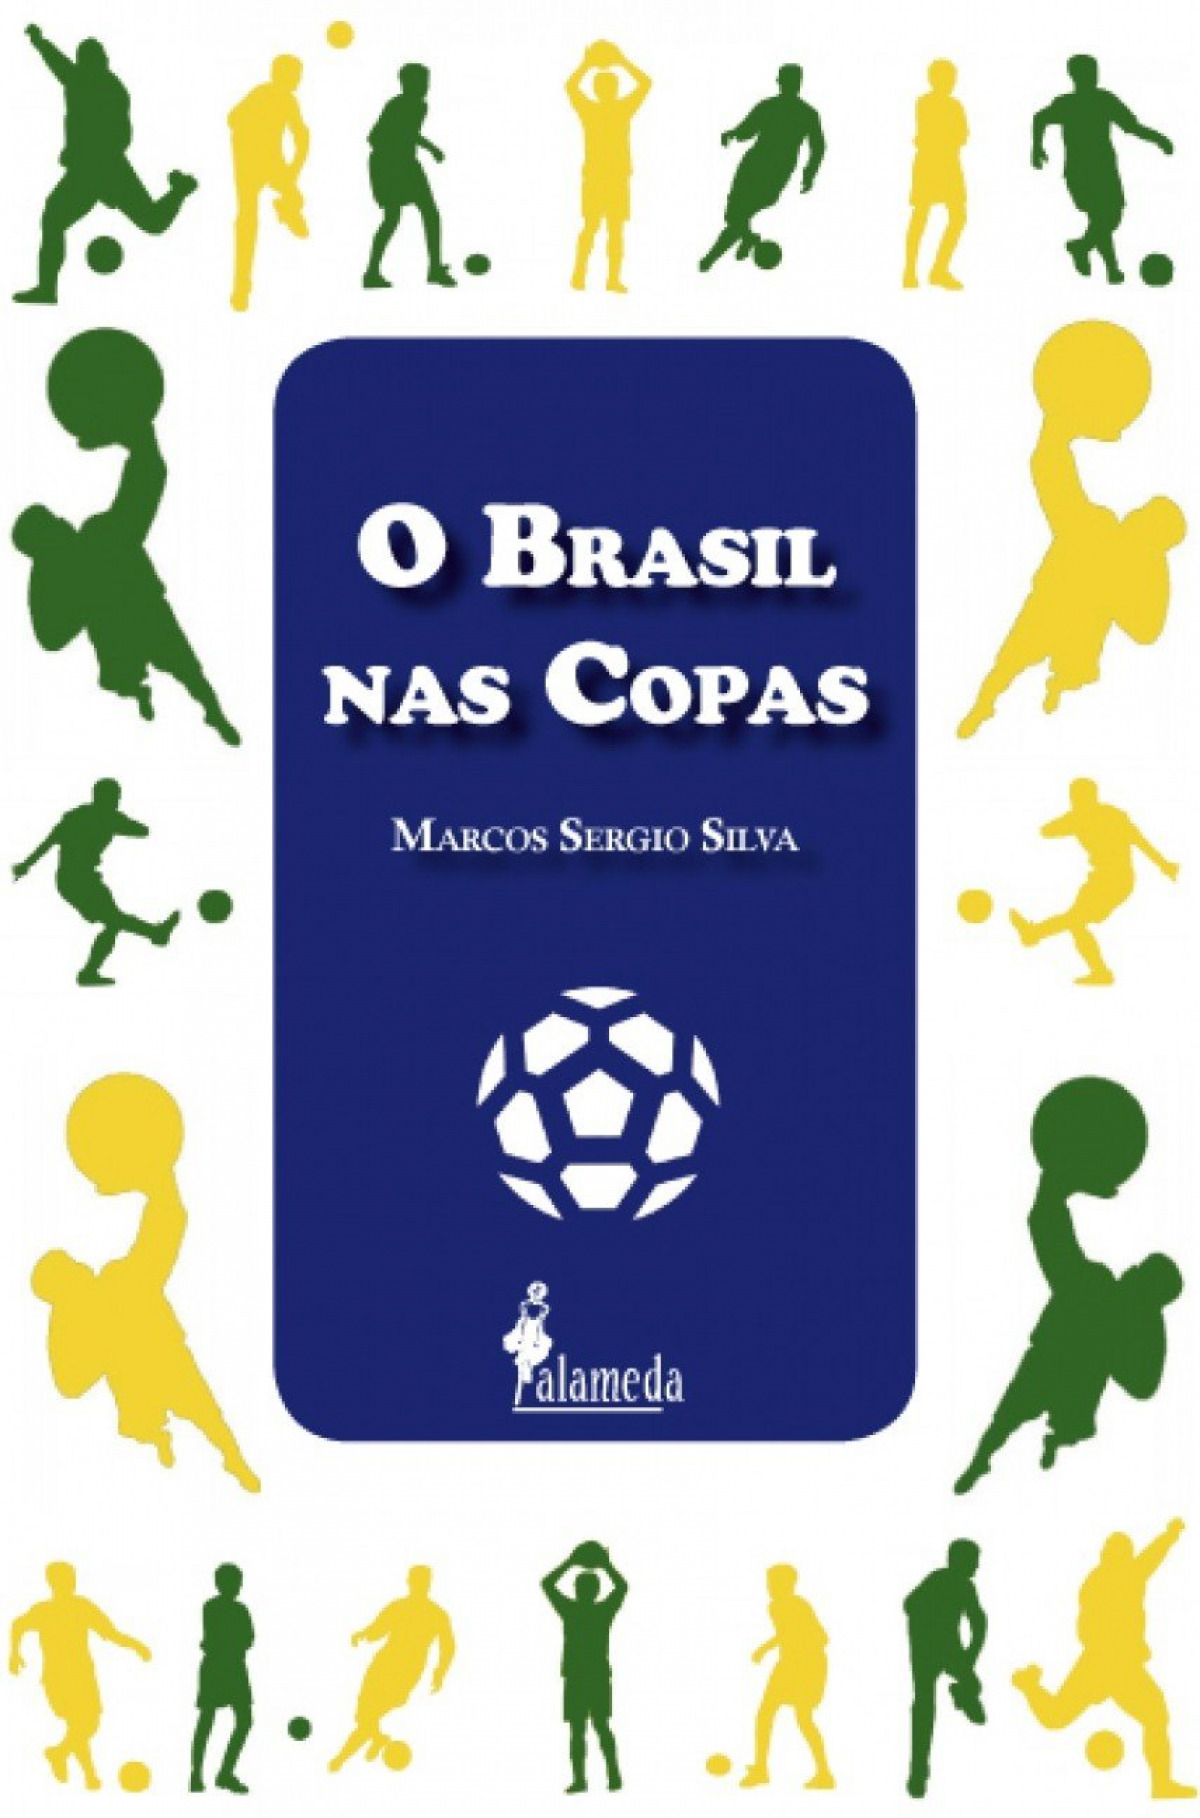 O brasil nas copas - Marcos Sergio Silva